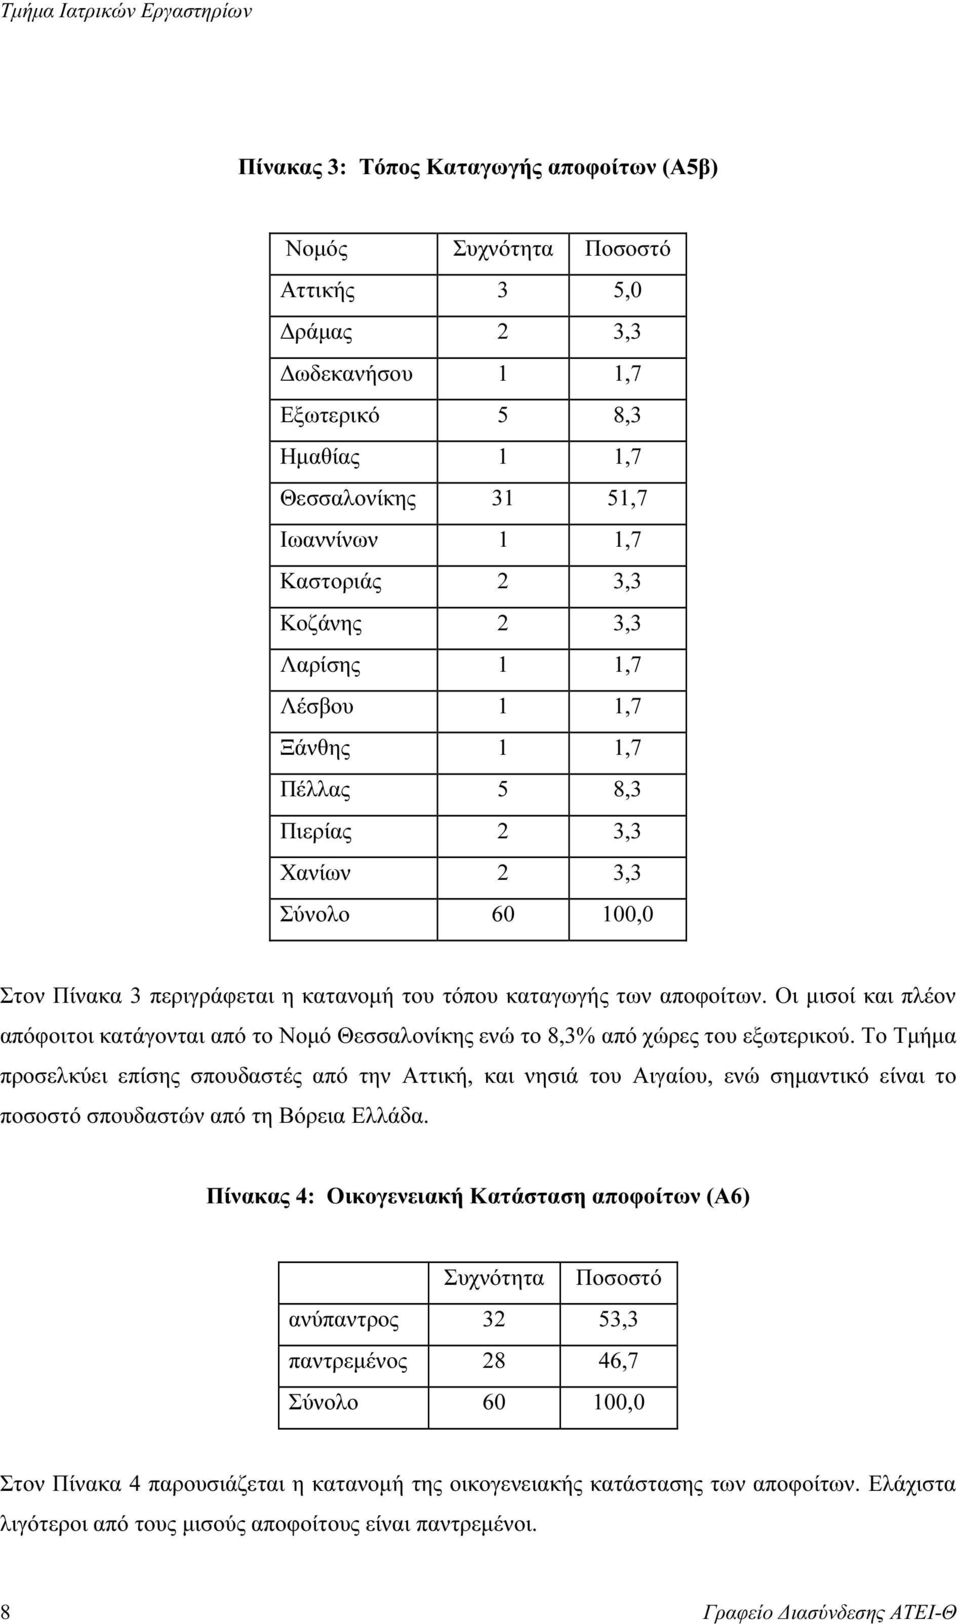 Οι µισοί και πλέον απόφοιτοι κατάγονται από το Νοµό Θεσσαλονίκης ενώ το 8,3% από χώρες του εξωτερικού.